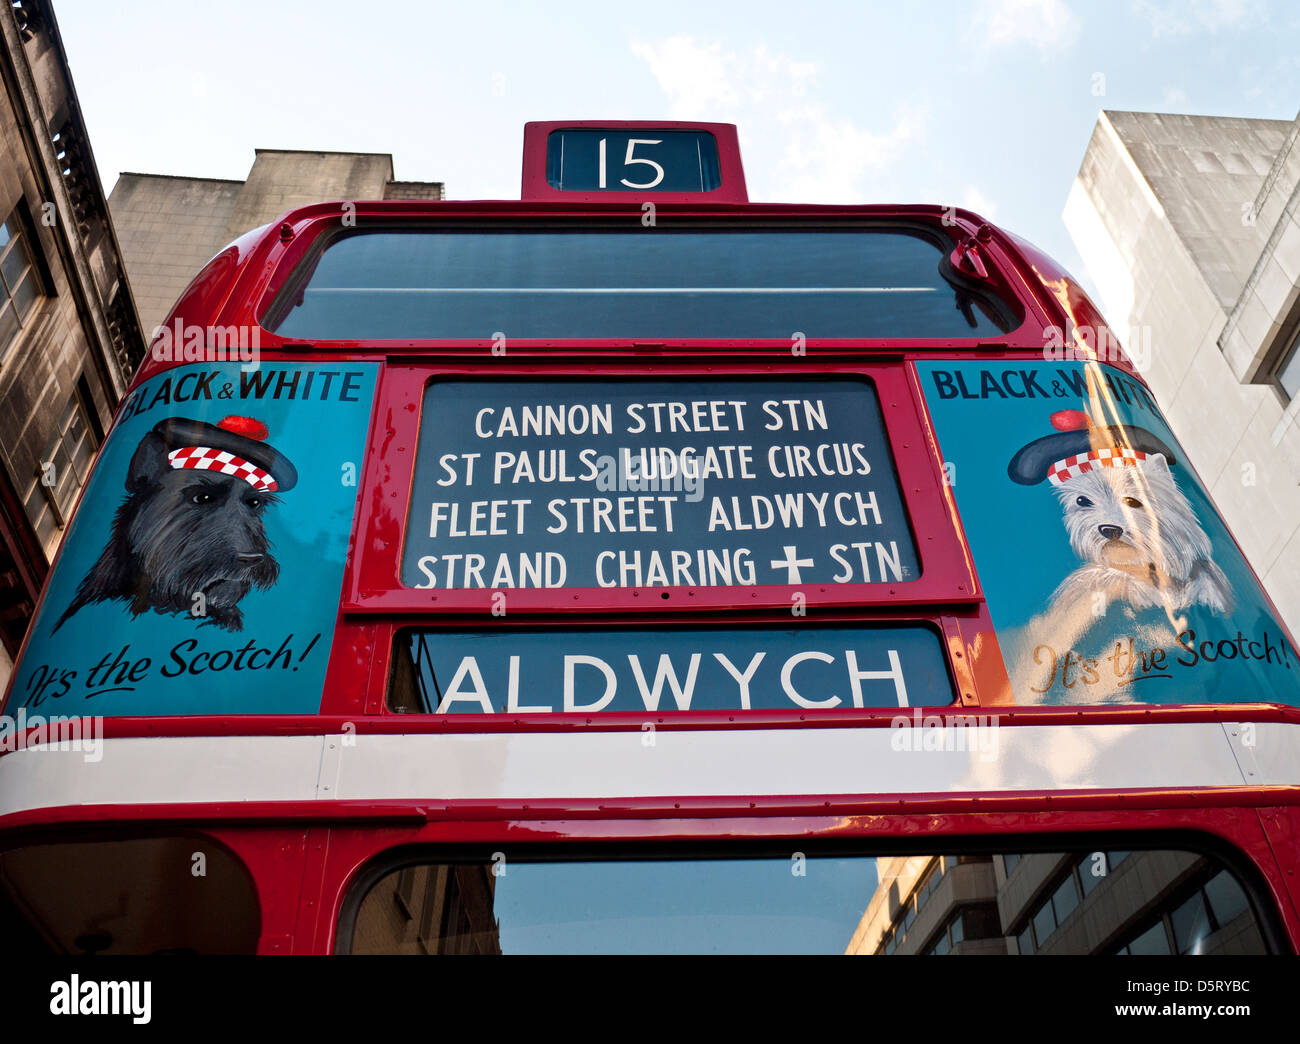 Centro storico 1940 tradizionale restaurata UK bus rosso a due piani, con tempo di guerra i manifesti pubblicitari per Black & White Scotch Foto Stock